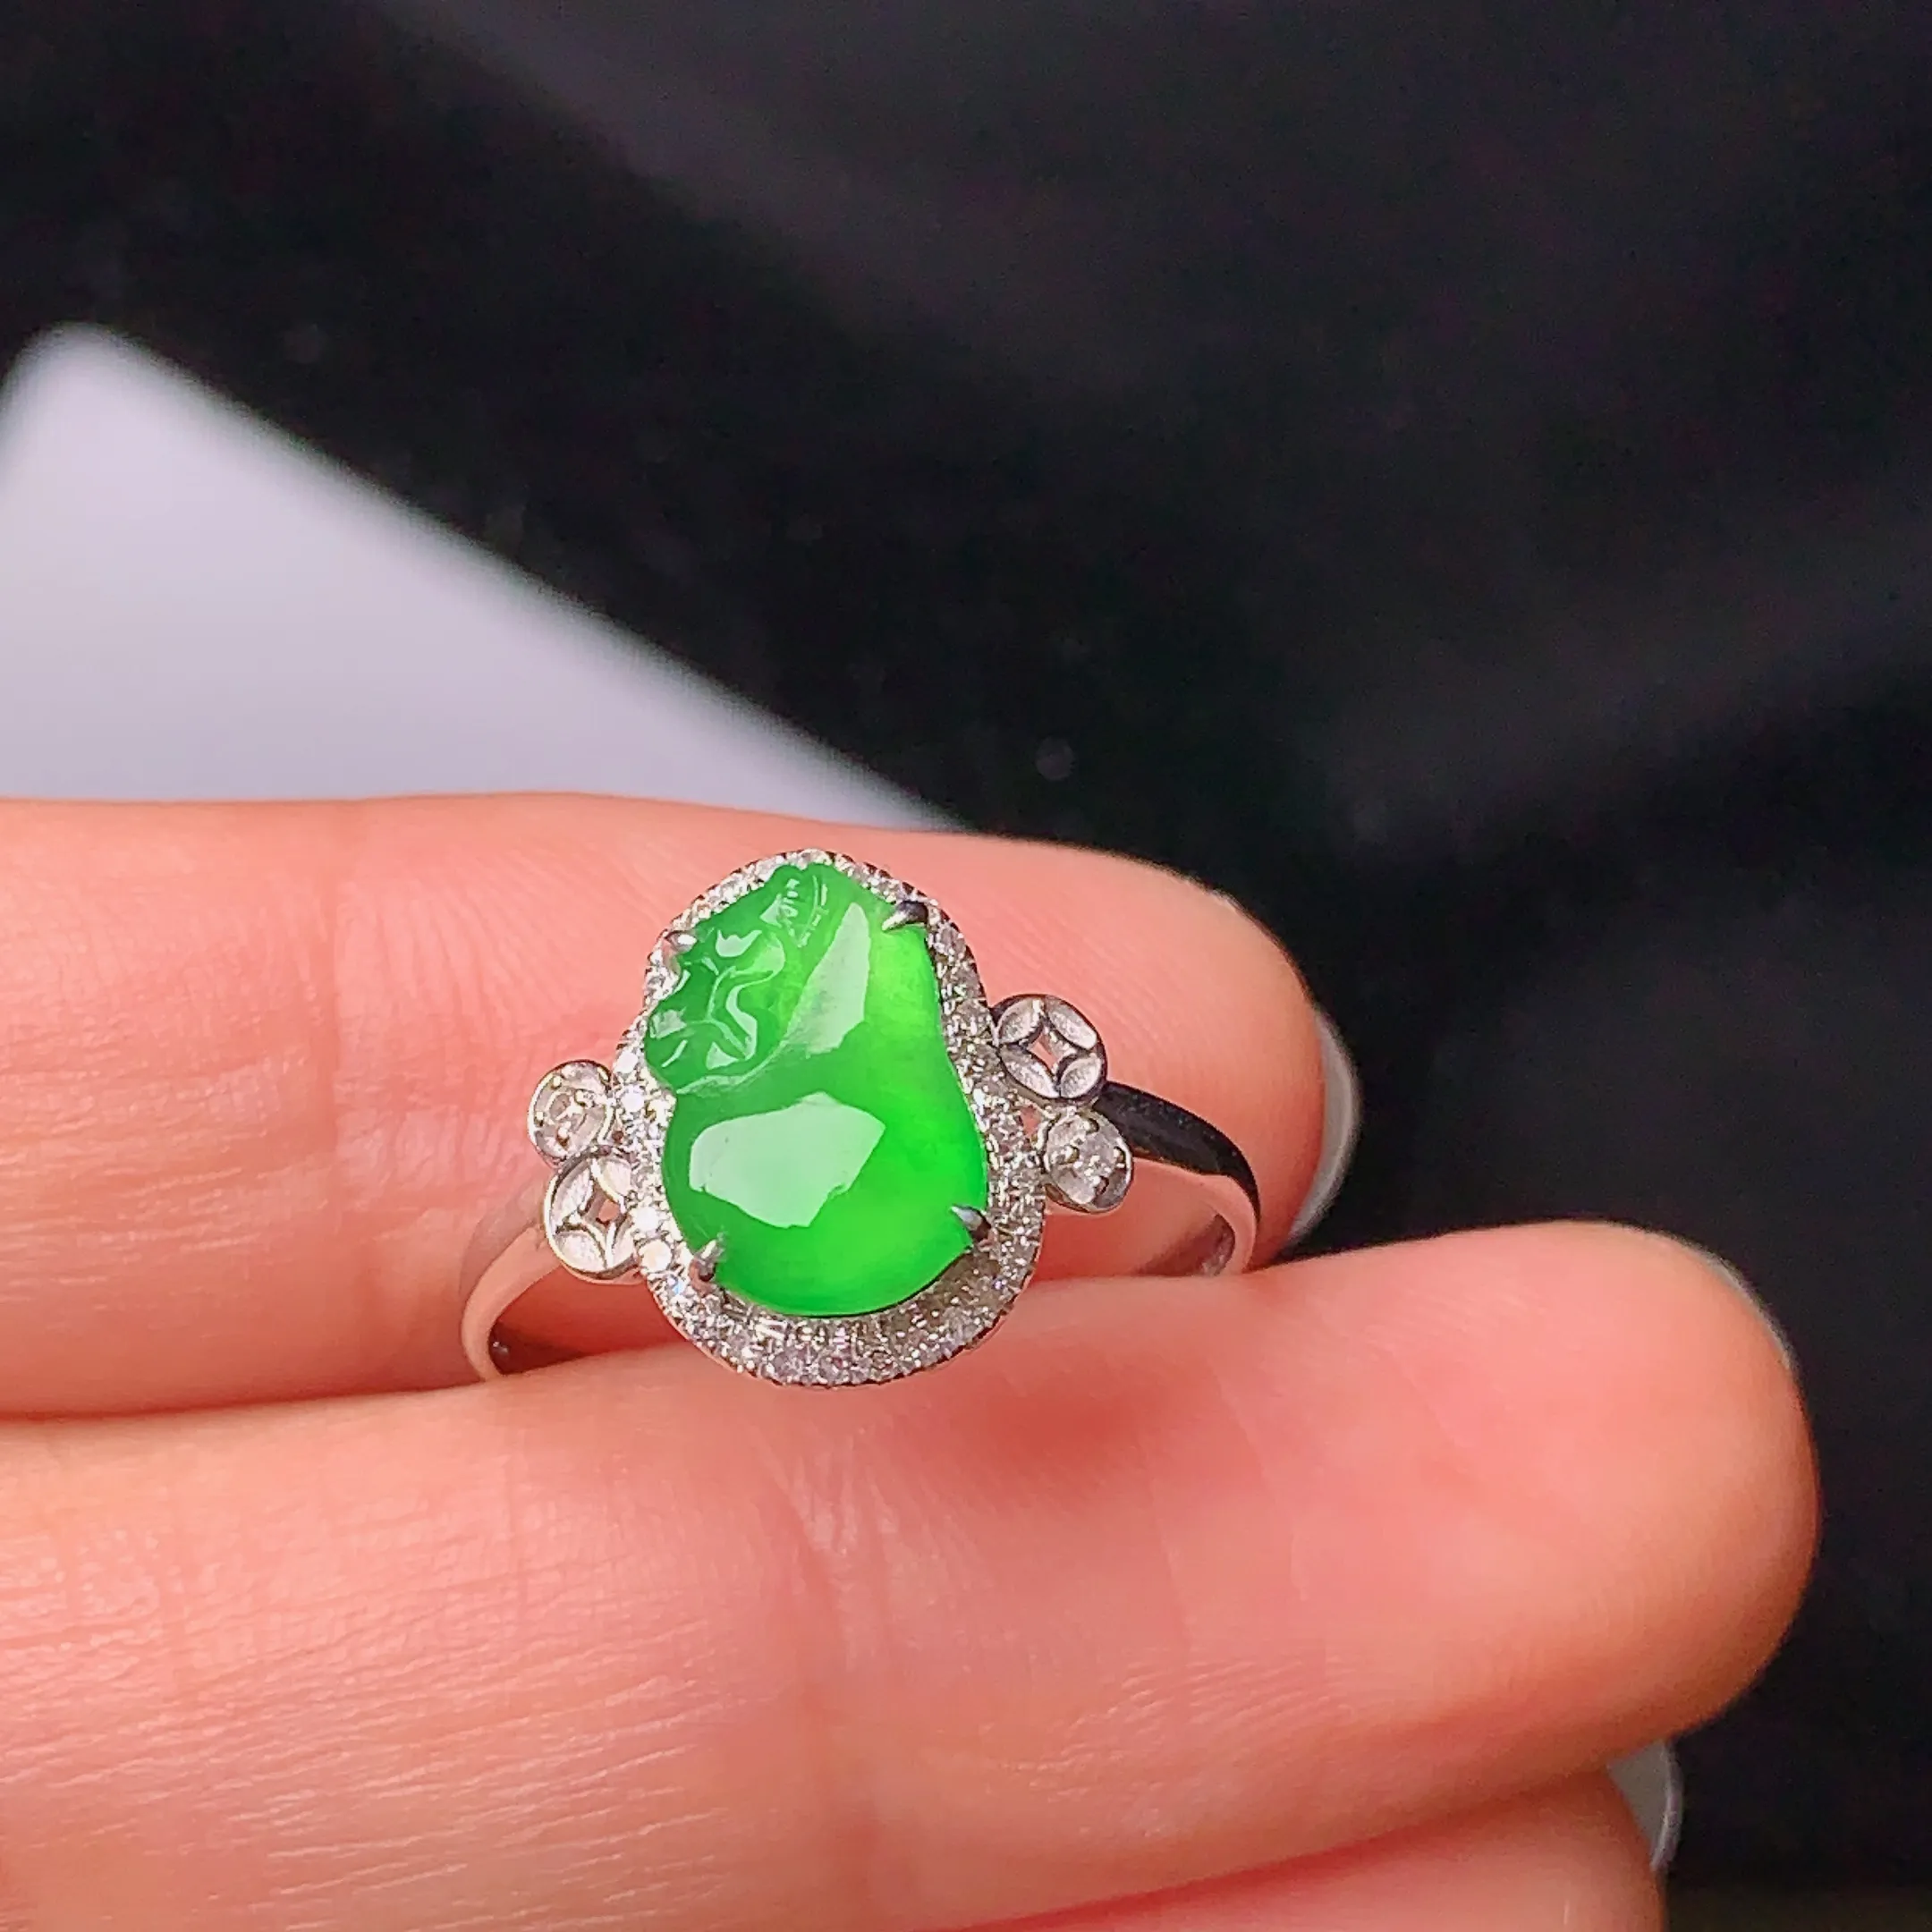 18k金钻镶嵌满绿钱袋戒指 玉质细腻 款式新颖时尚高贵优雅 圈口14.5 整体尺寸11.9*12.3